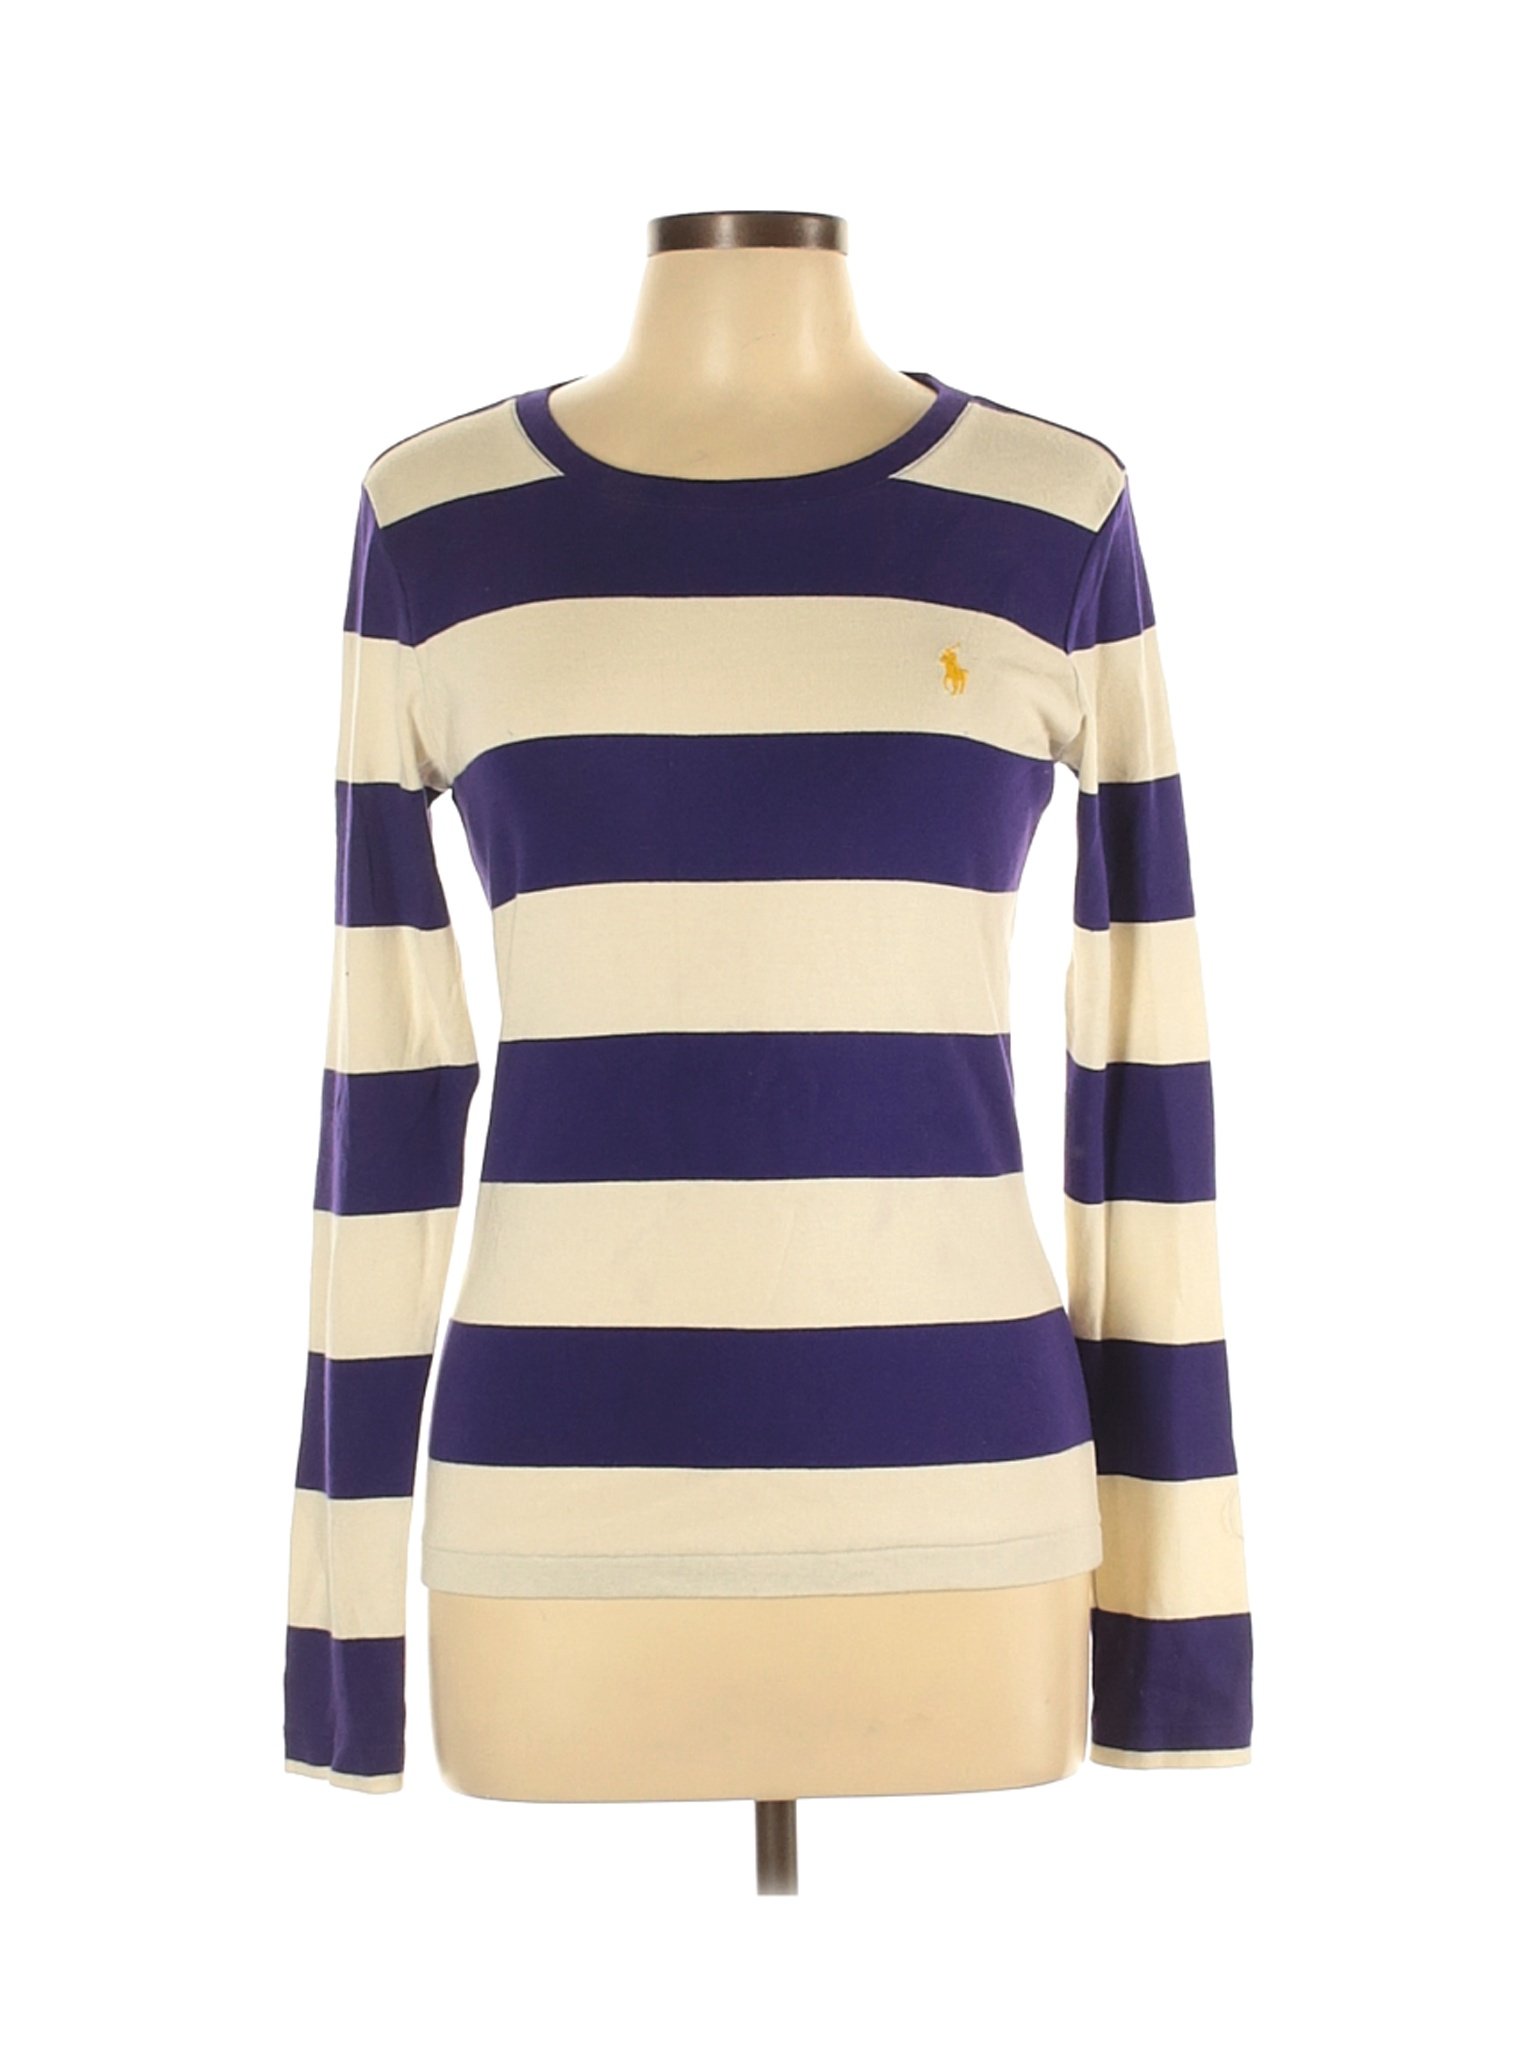 Ralph Lauren Sport Women Purple Long Sleeve T-Shirt L | eBay